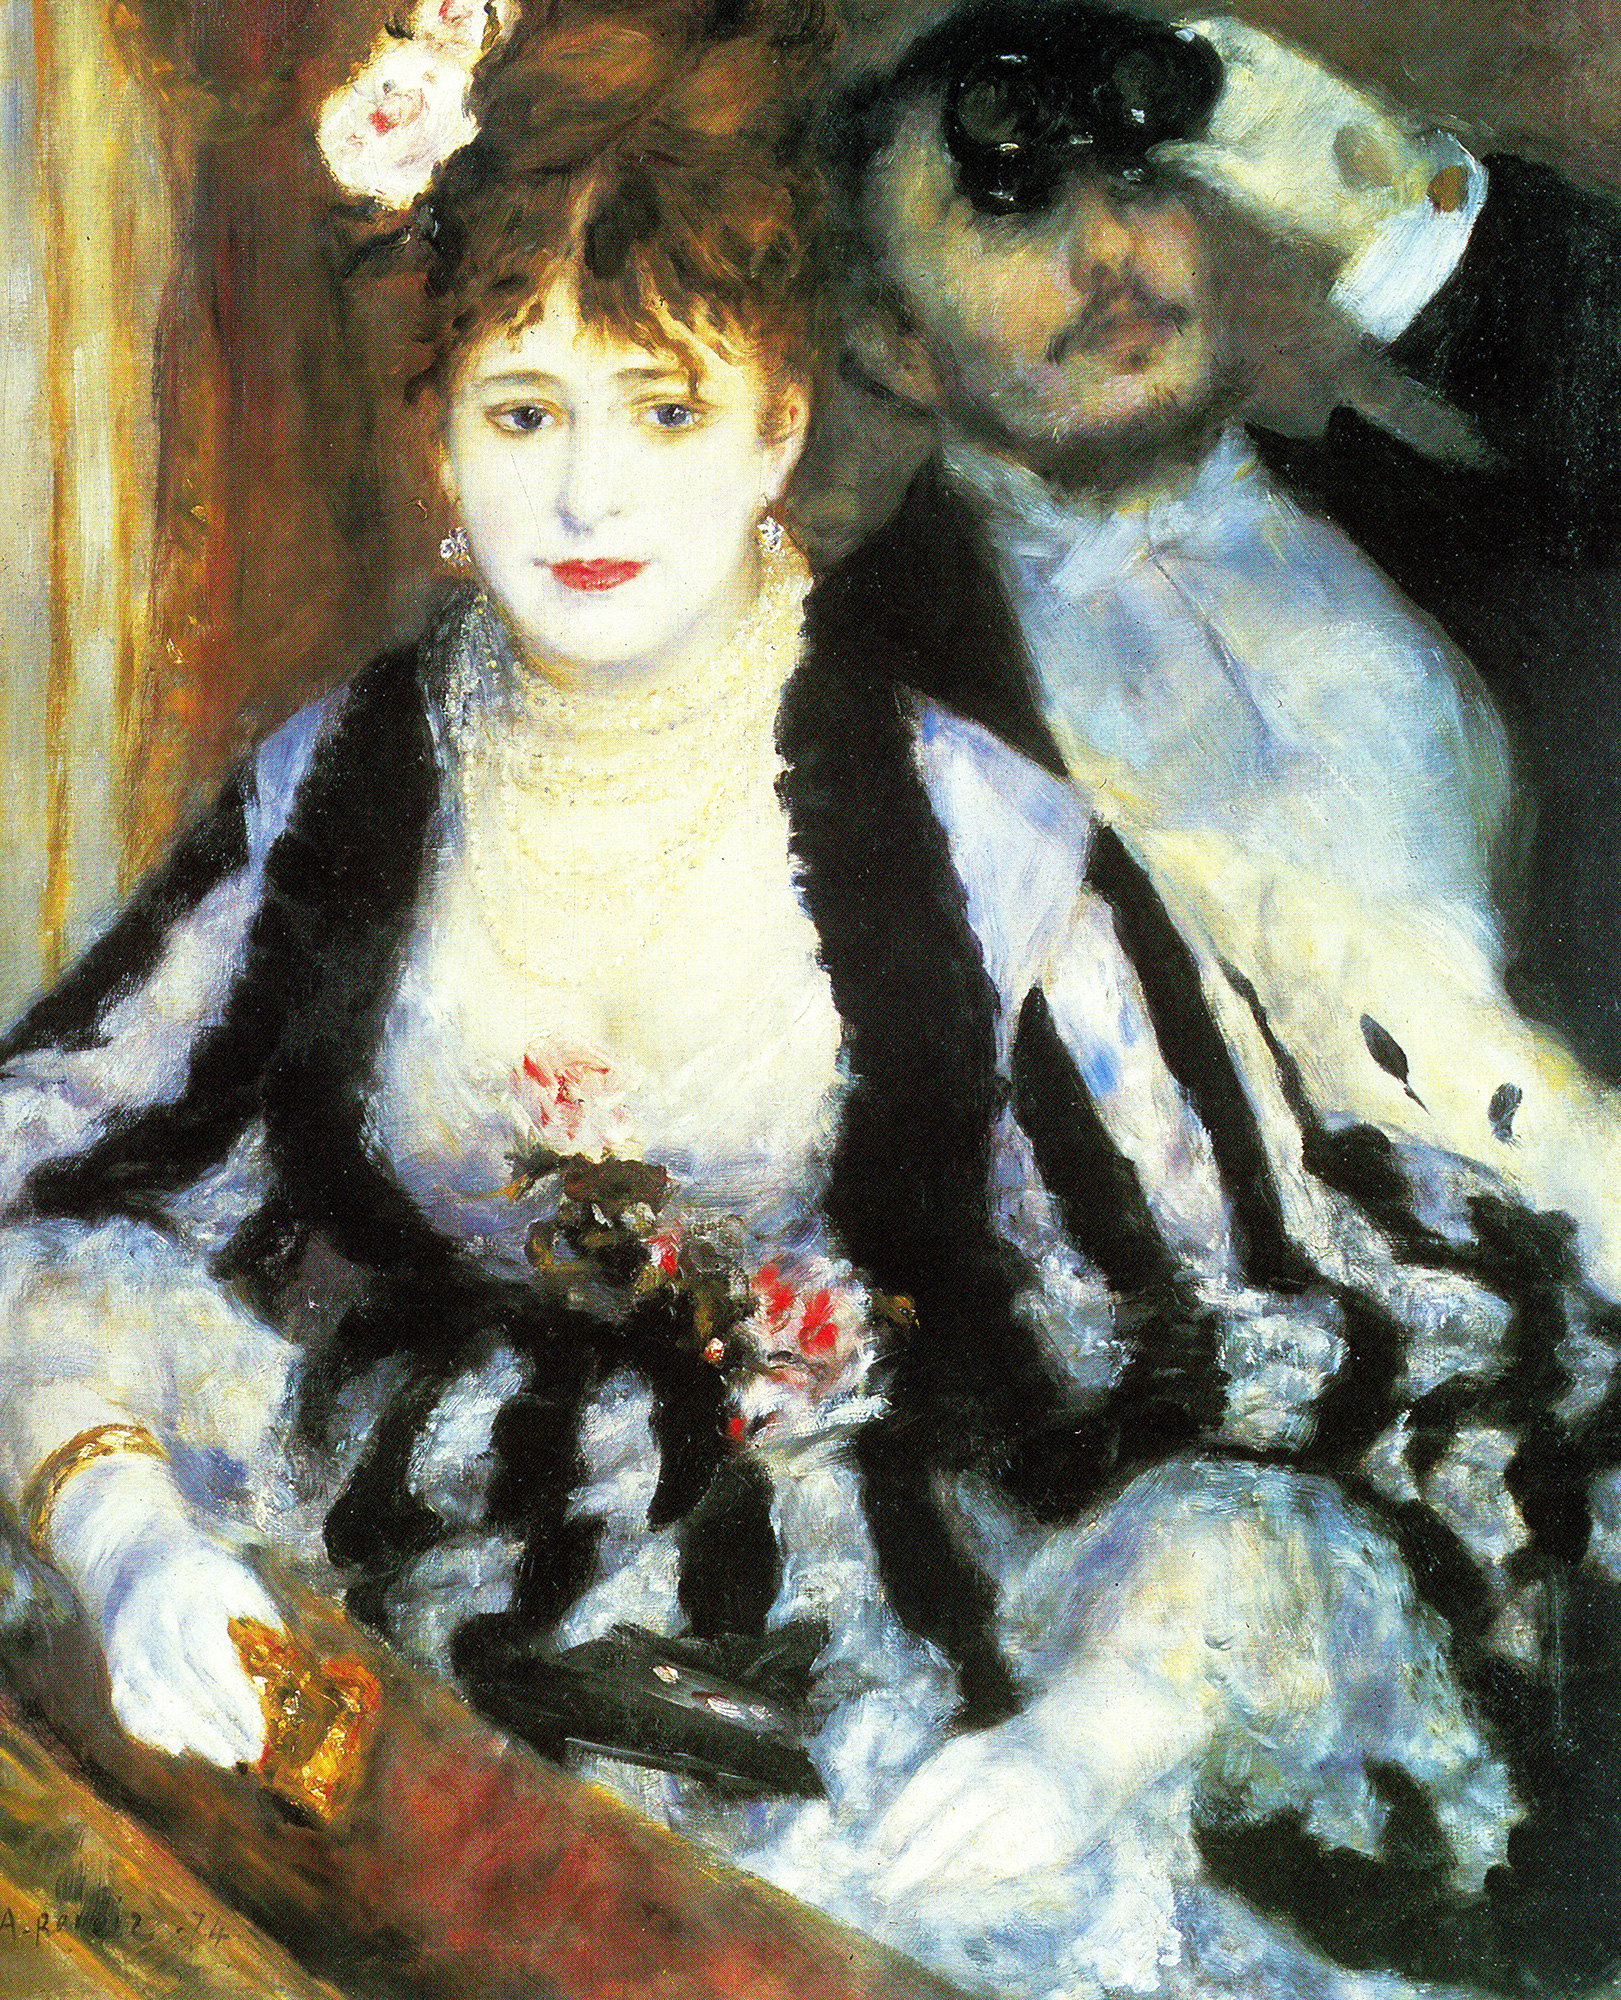 August Renoir, La Loge, 1874